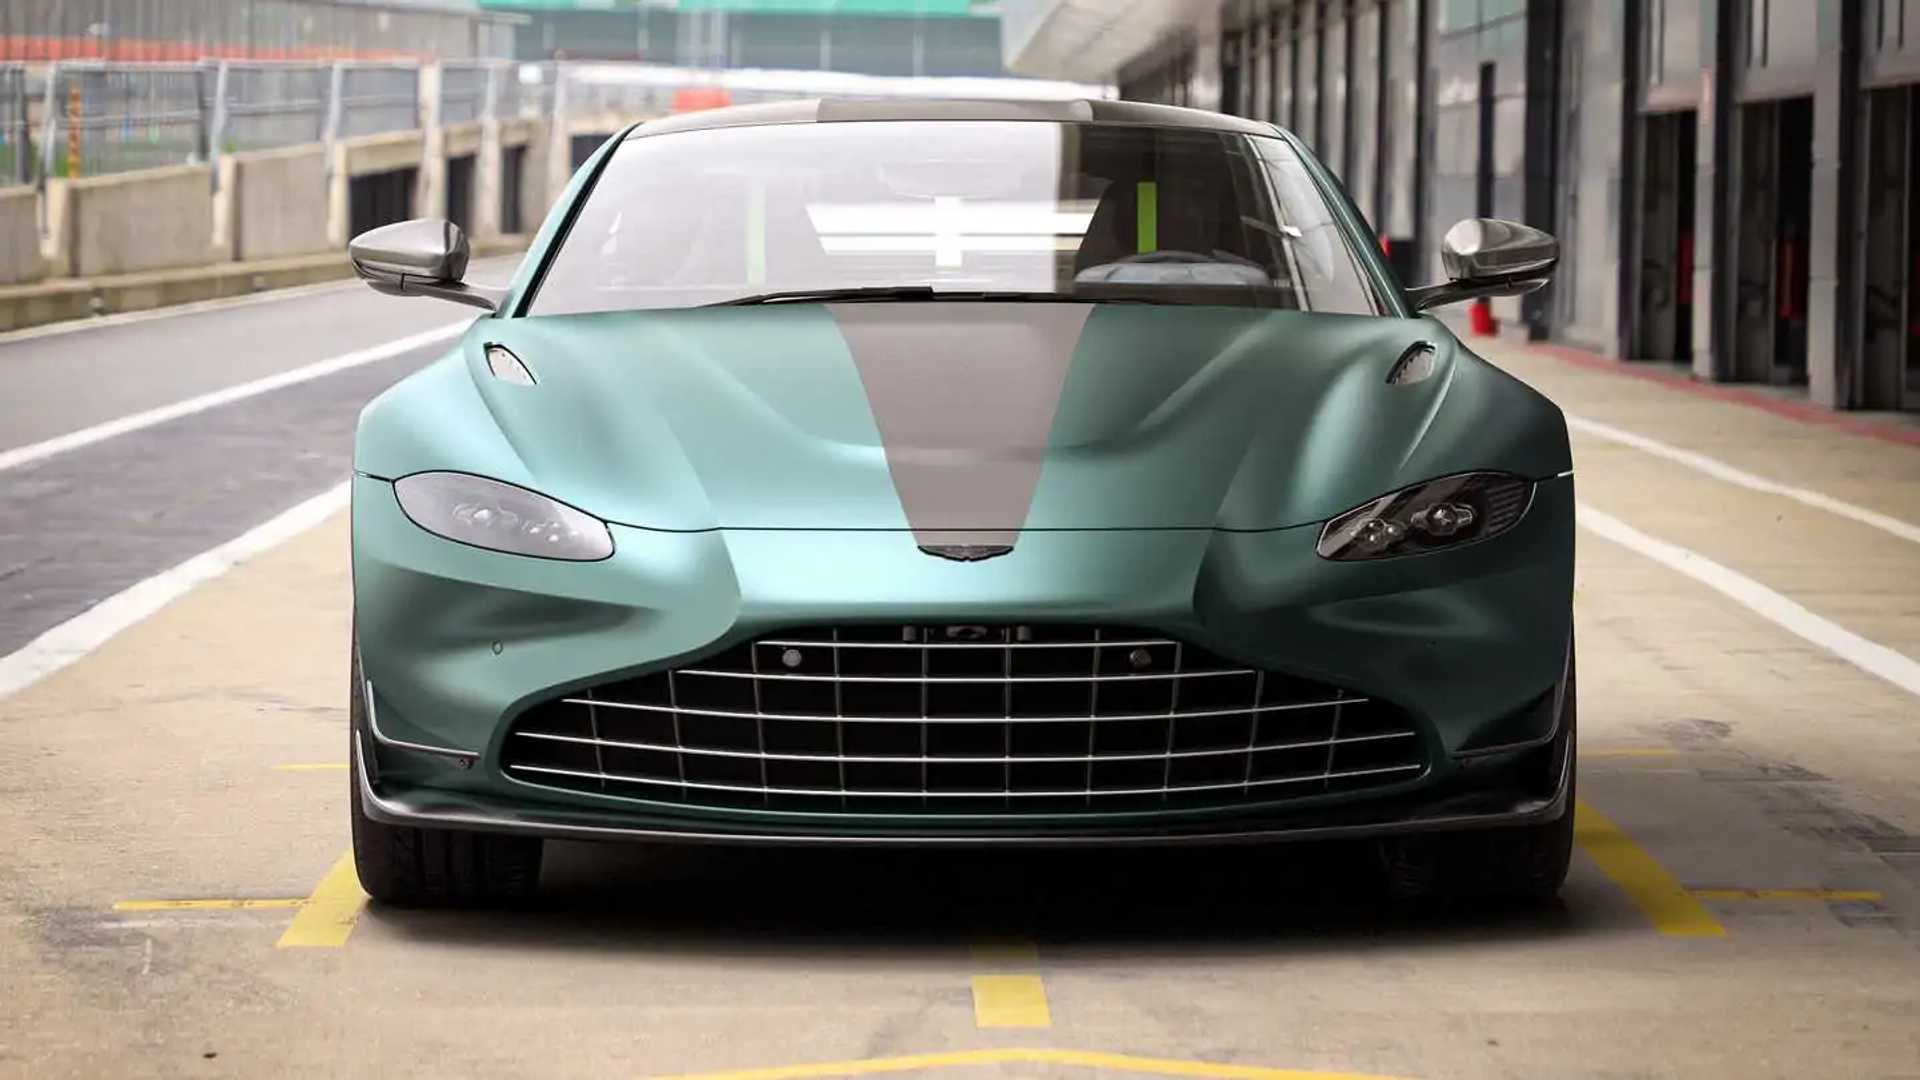 Aston Martin Offers Grille Upgrades for Older Vantage Models